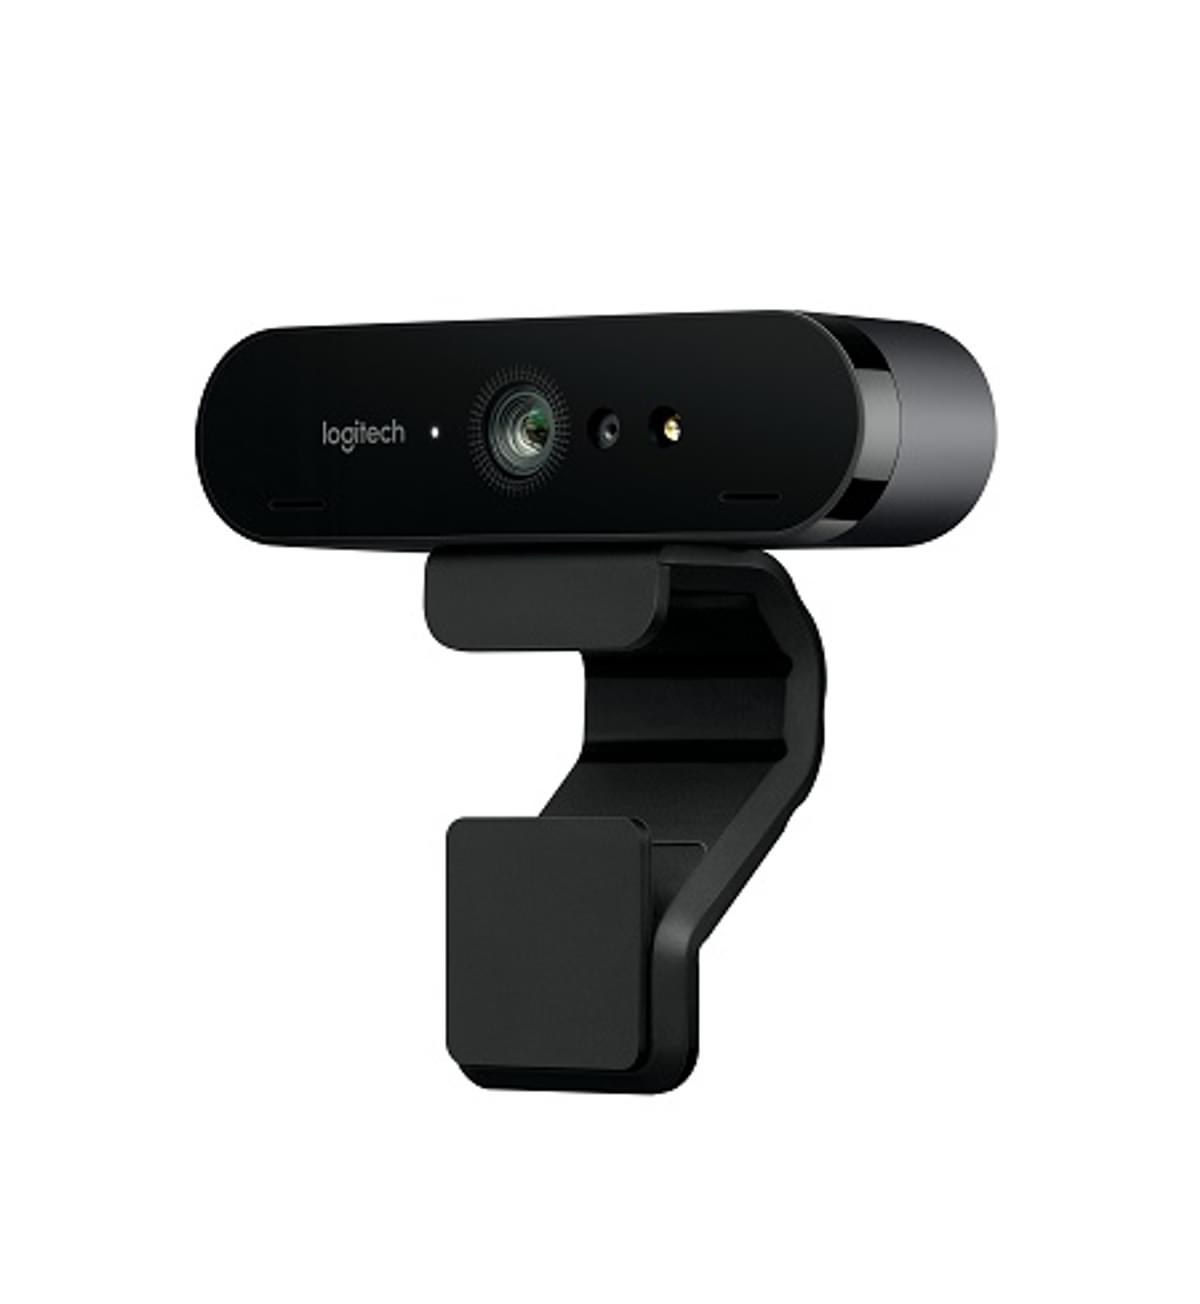 Logitech introduceert BRIO webcam voor beter video-ervaring image